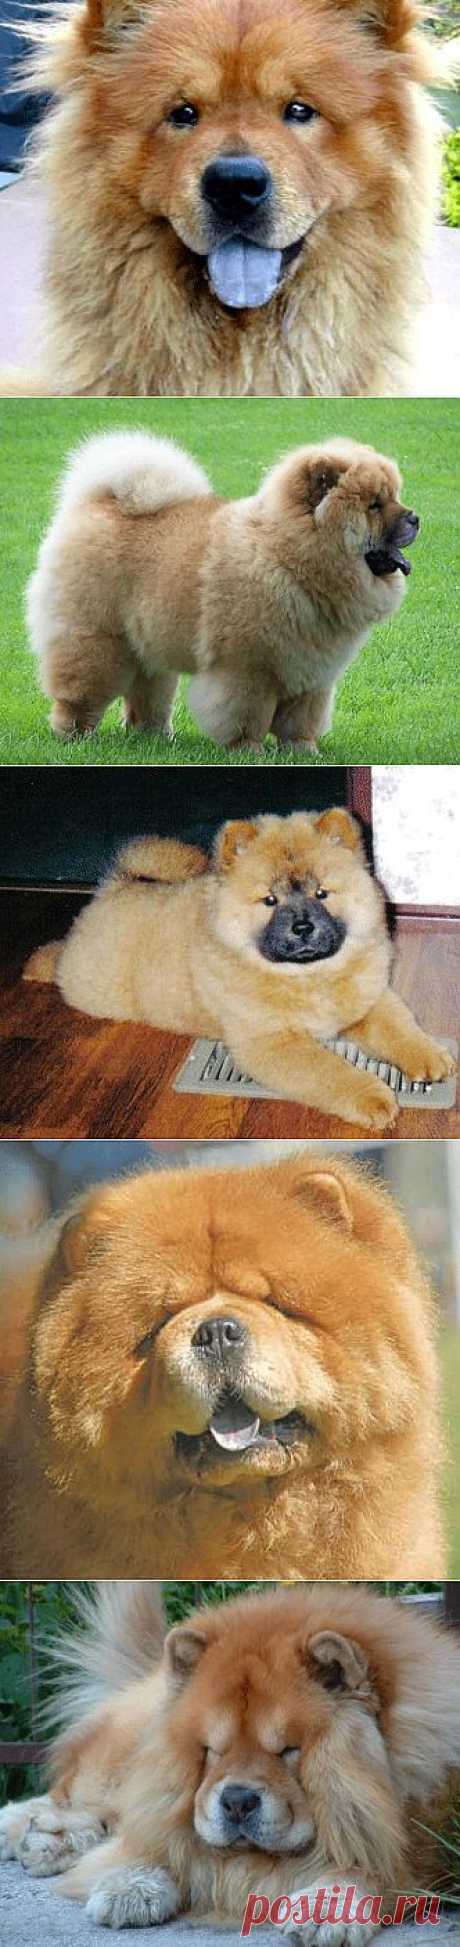 Чау-чау - описание породы собаки, фото, стандарт, щенки и питомники, дрессировка | Animal.ru